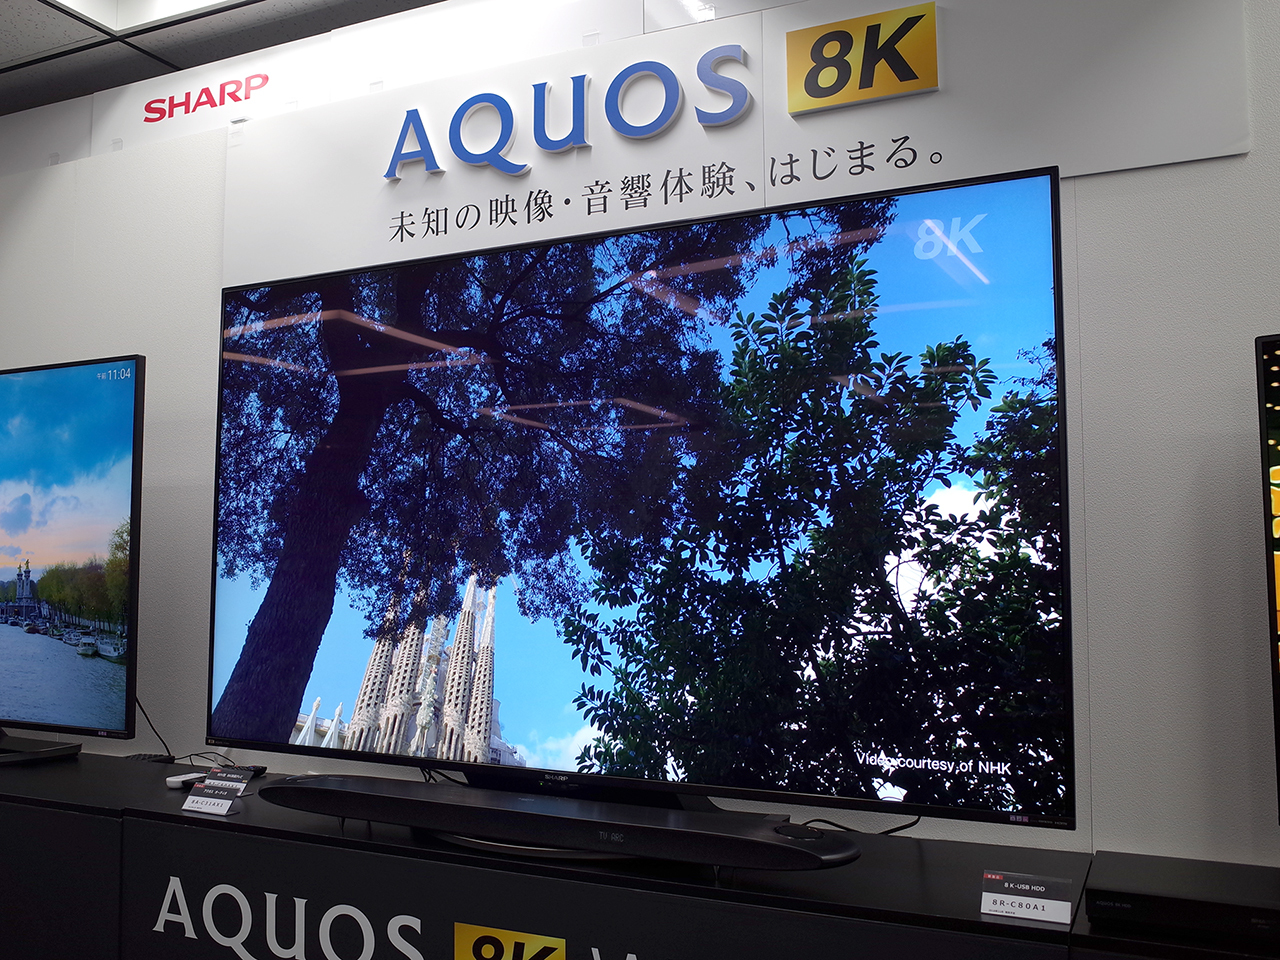 シャープ、8Kチューナ内蔵8Kテレビ「AQUOS AX1」シリーズ発表--未知の映像音響体験始まる - CNET Japan